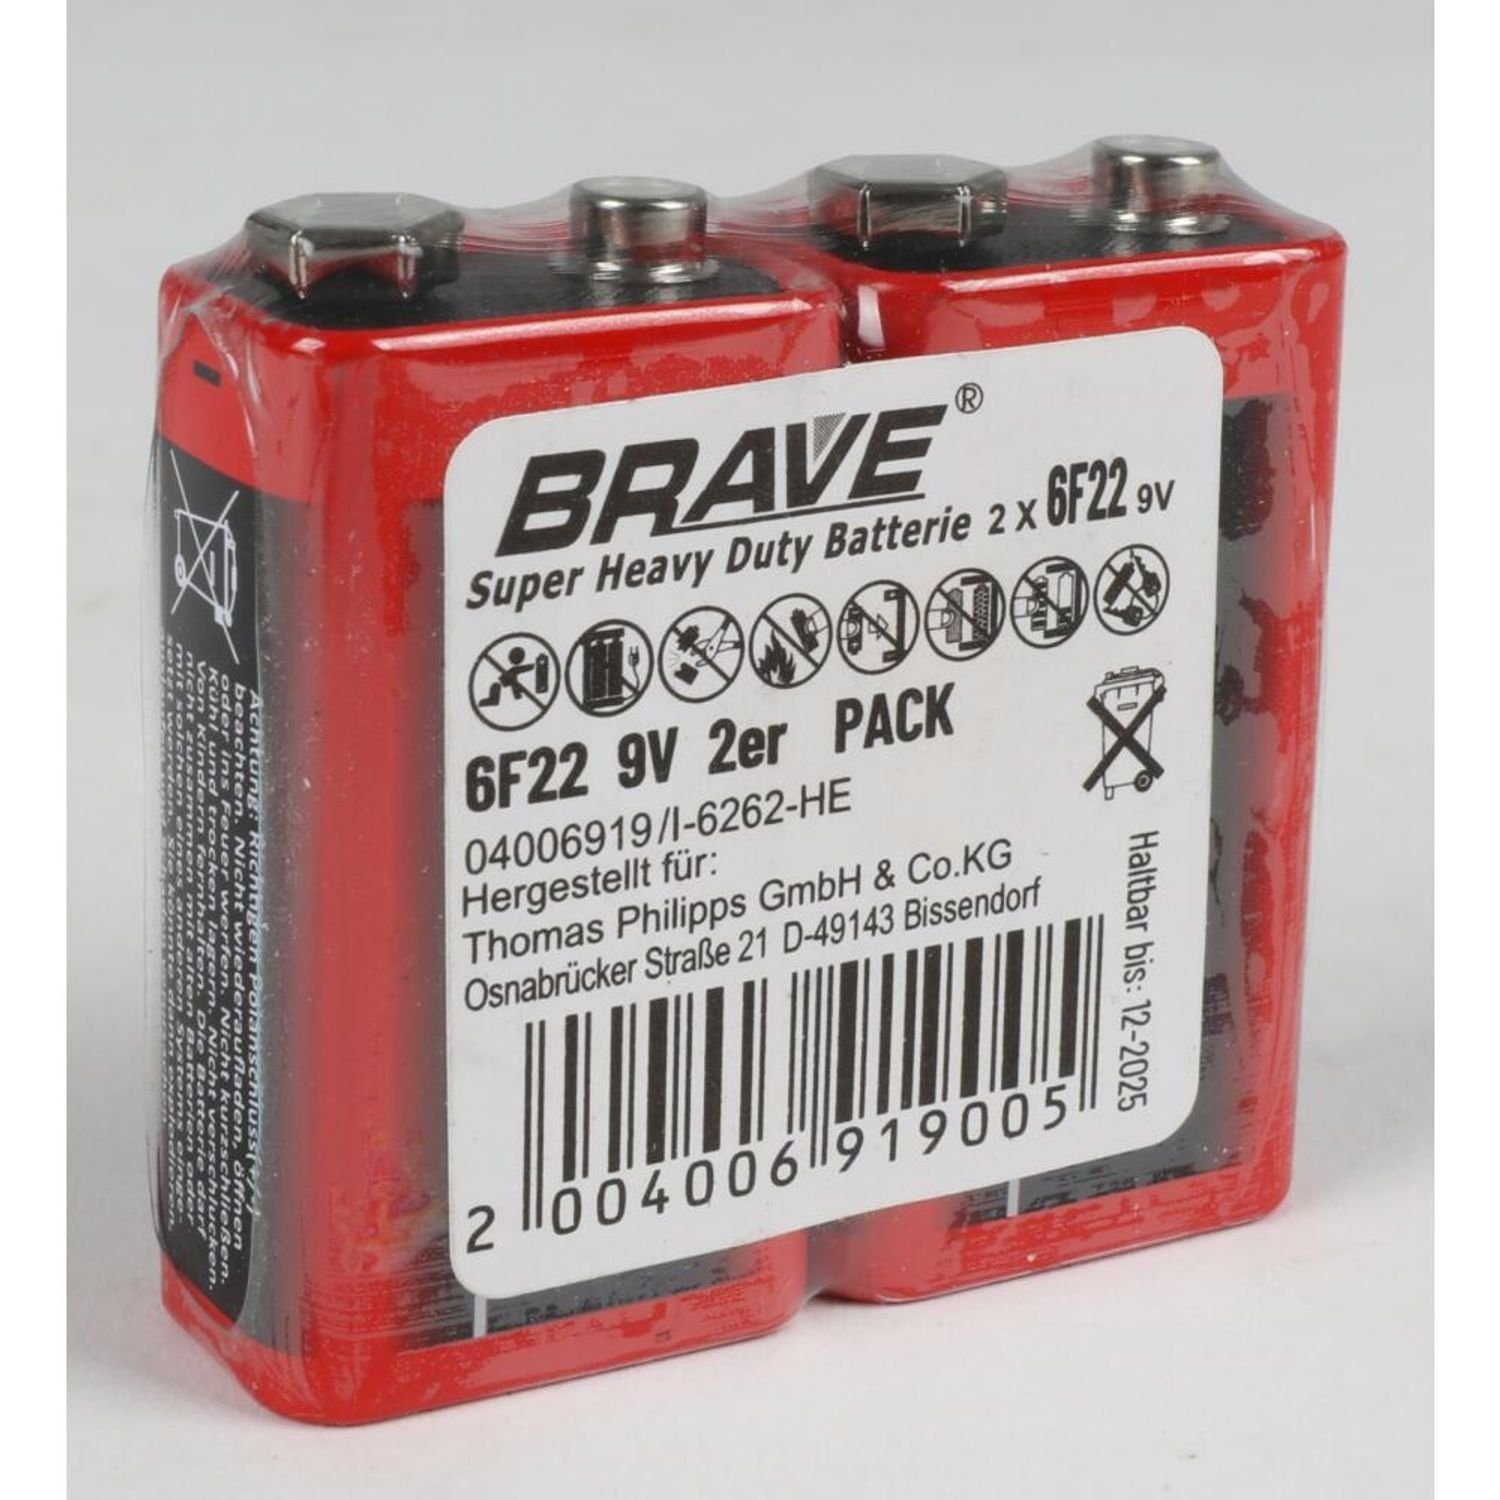 BURI 10x Brave 6F22 9V Batterie, Industrial Super Strom Stark (20 Batterien St) Universal 2er